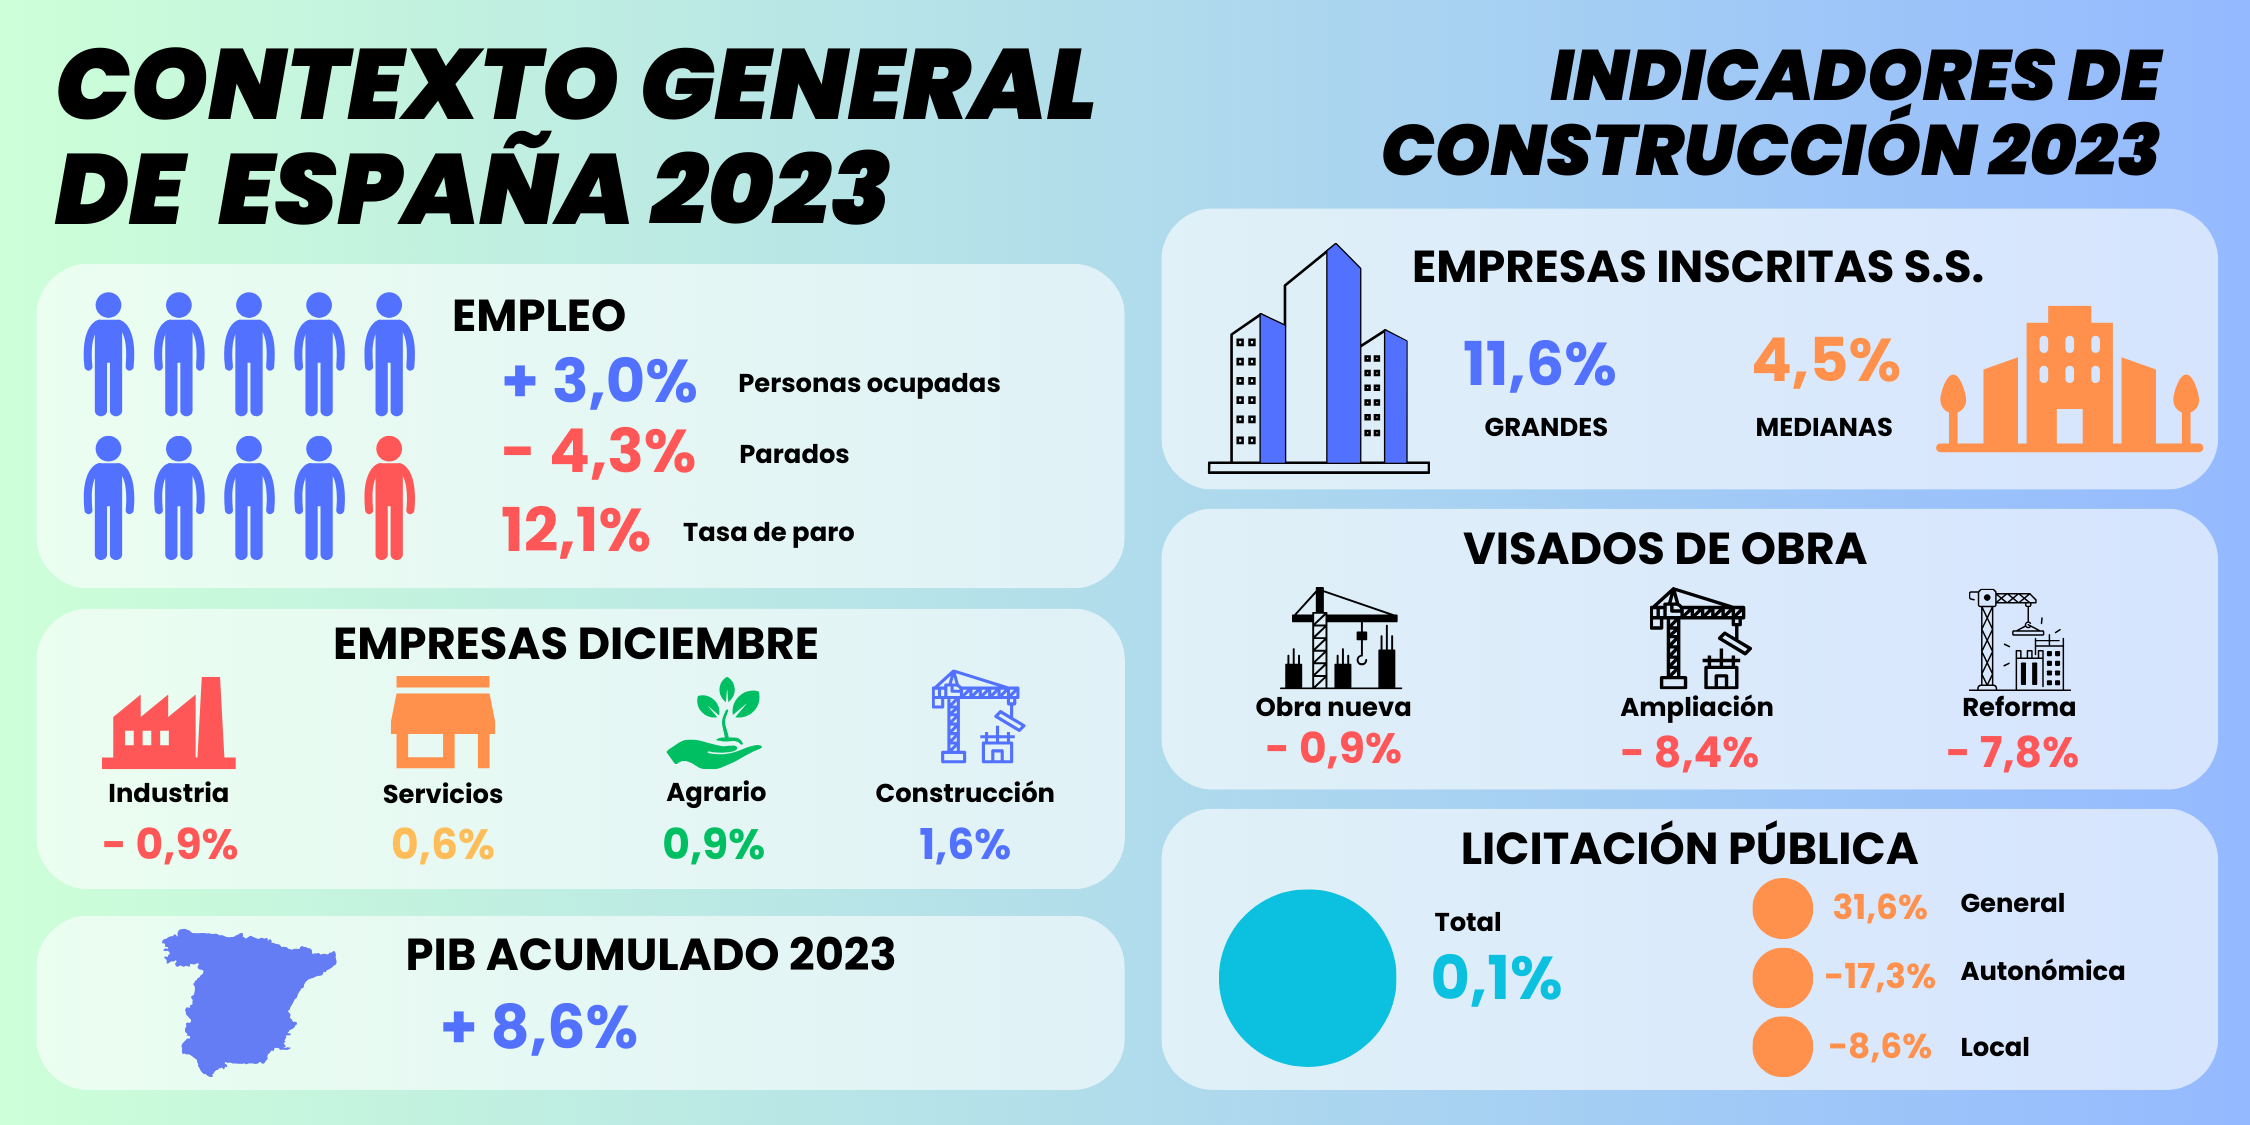  La construcción, sector líder en la creación de empresas a finales de 2023